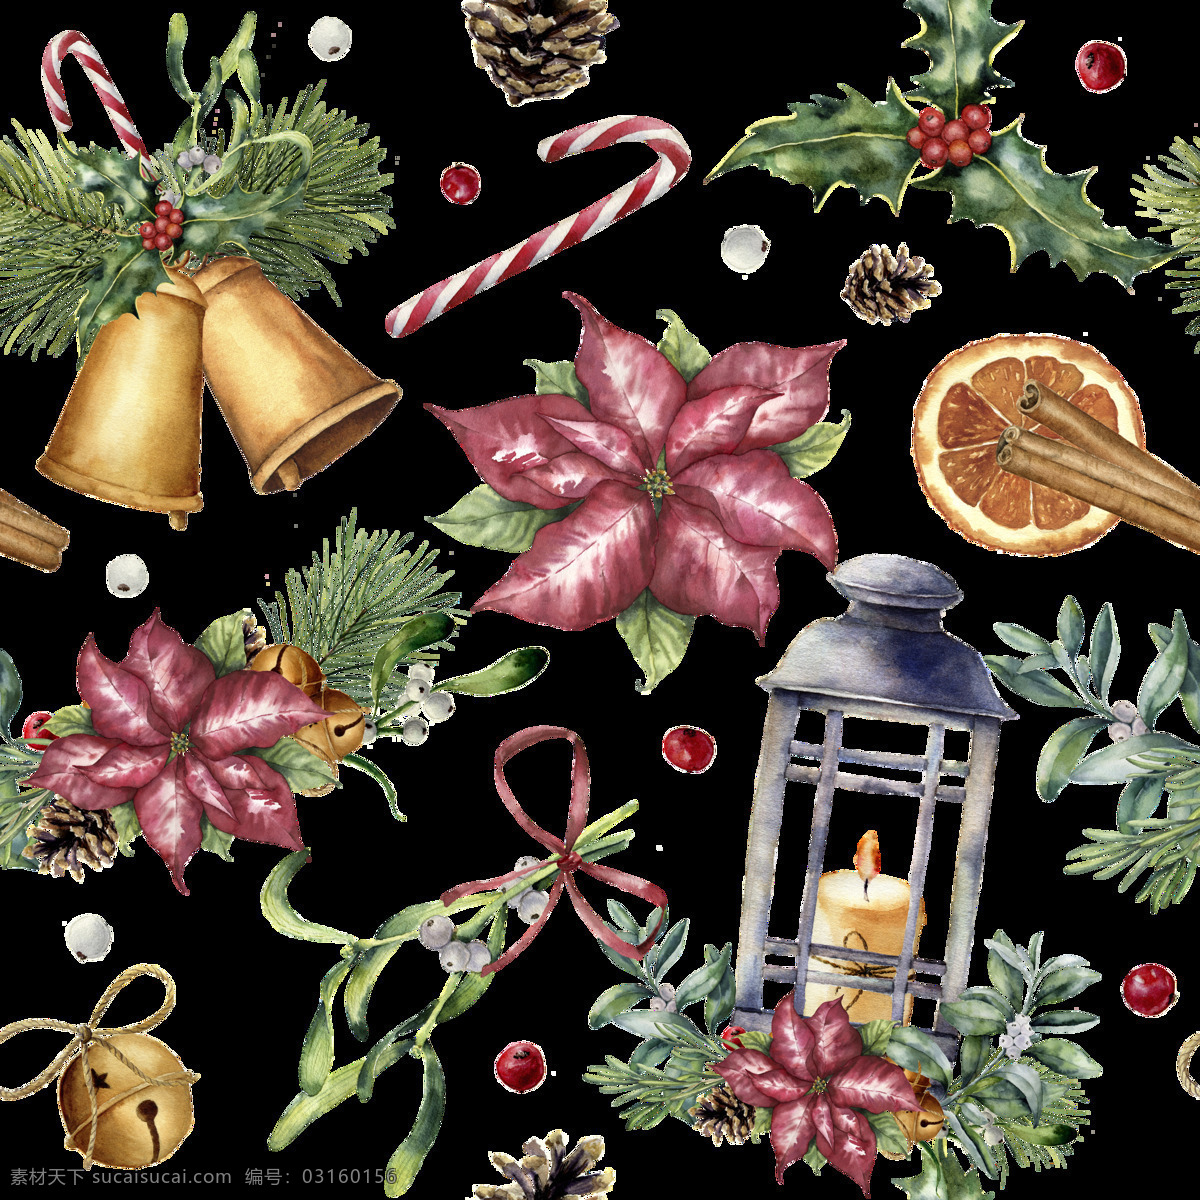 创意 圣诞节 水彩 背景 圣诞节主题 插画 绘画 植物 树叶 圣诞树 礼物 礼盒 广告 底纹边框 背景底纹